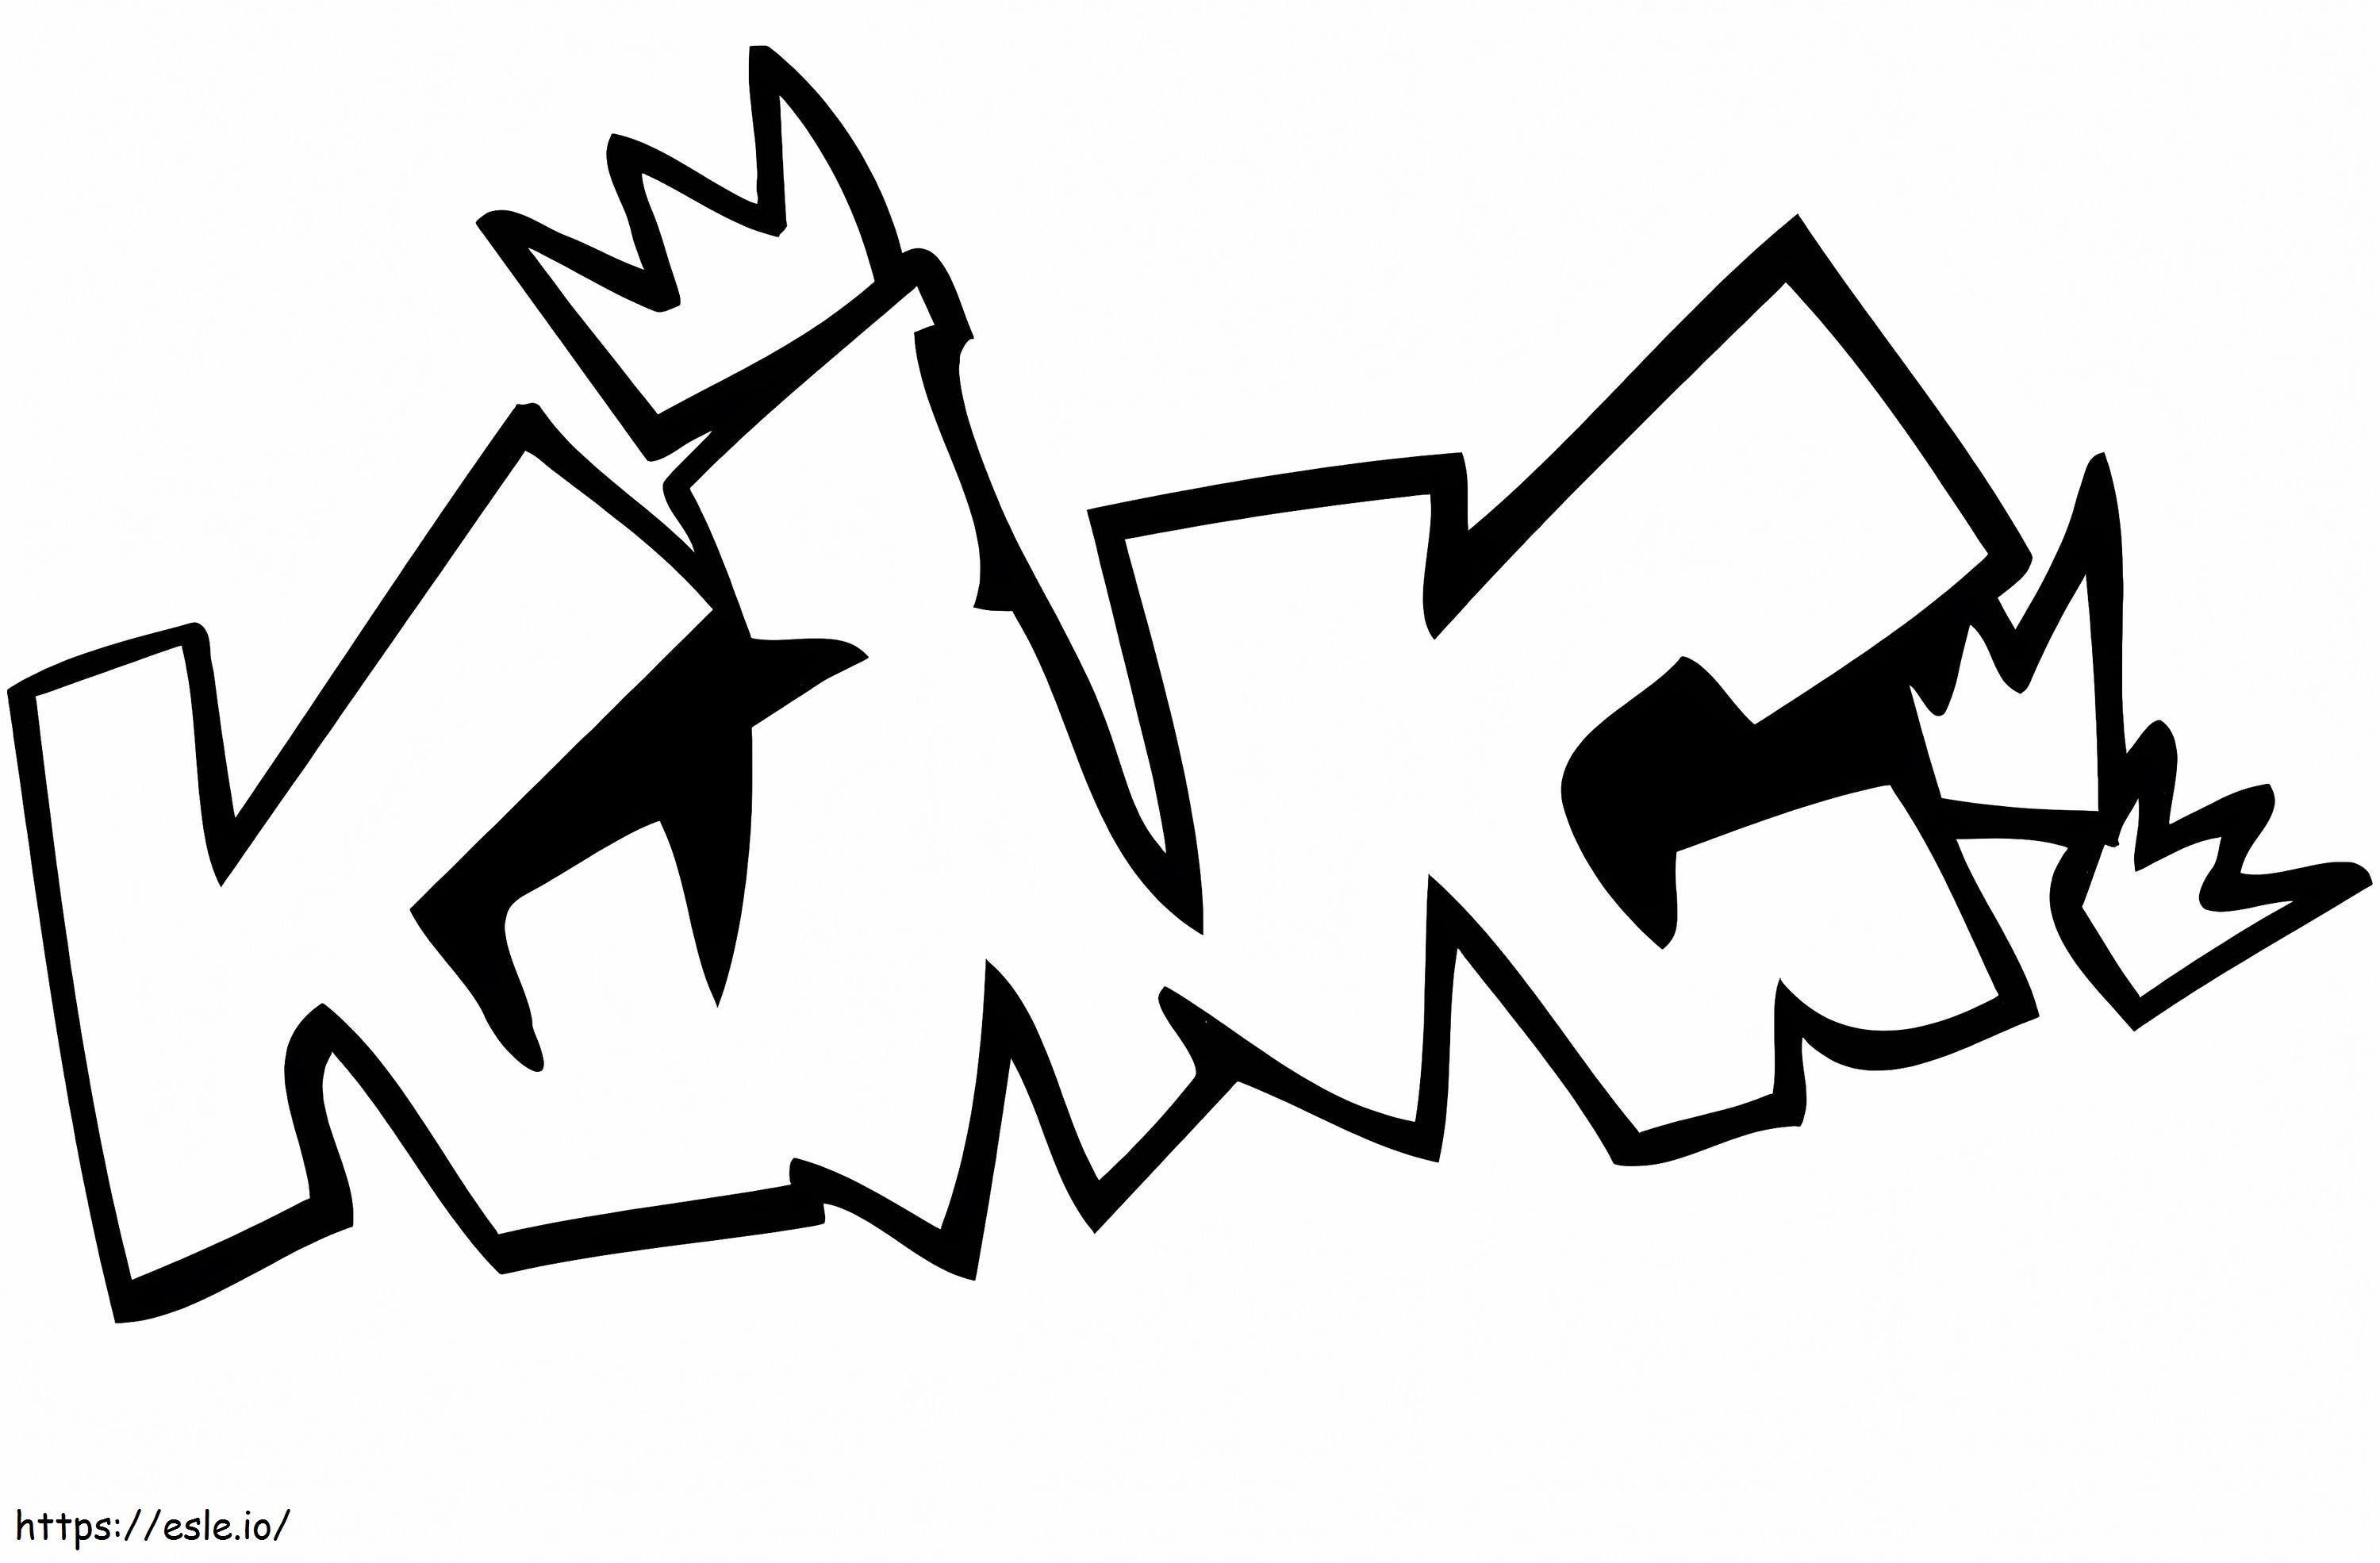 1576207828 King Graffiti coloring page